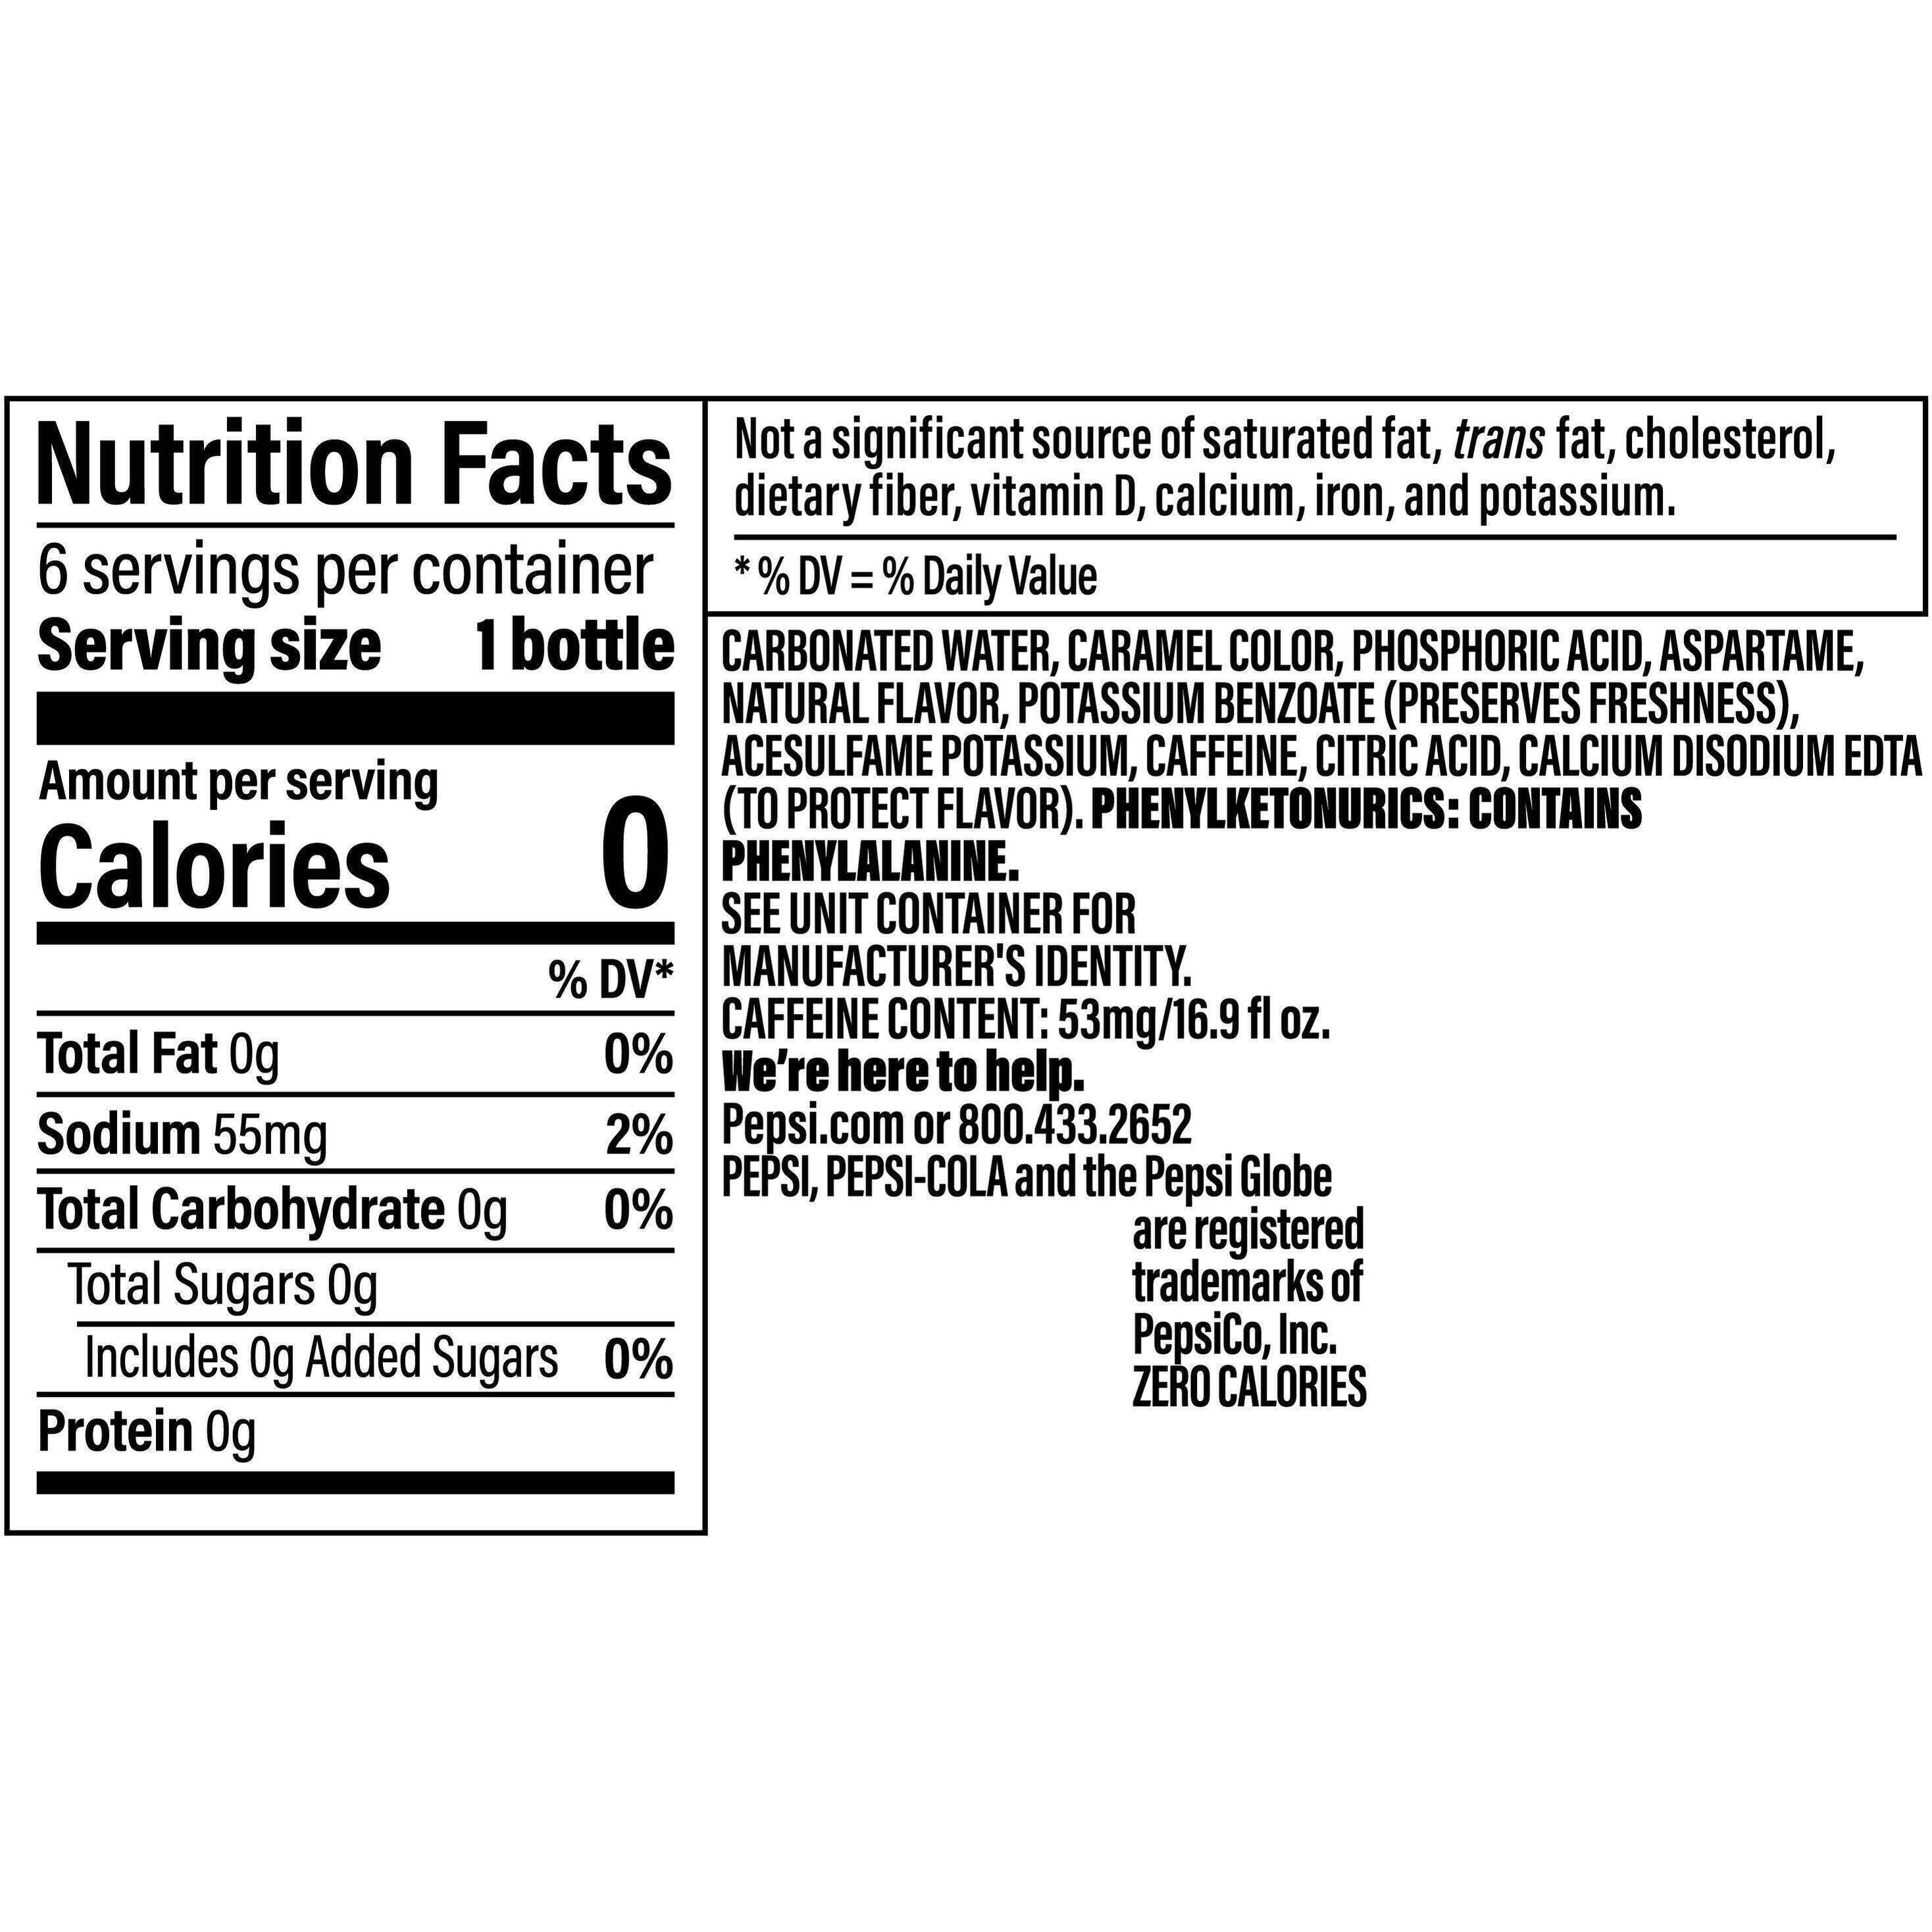 Image describing nutrition information for product Pepsi Zero Sugar